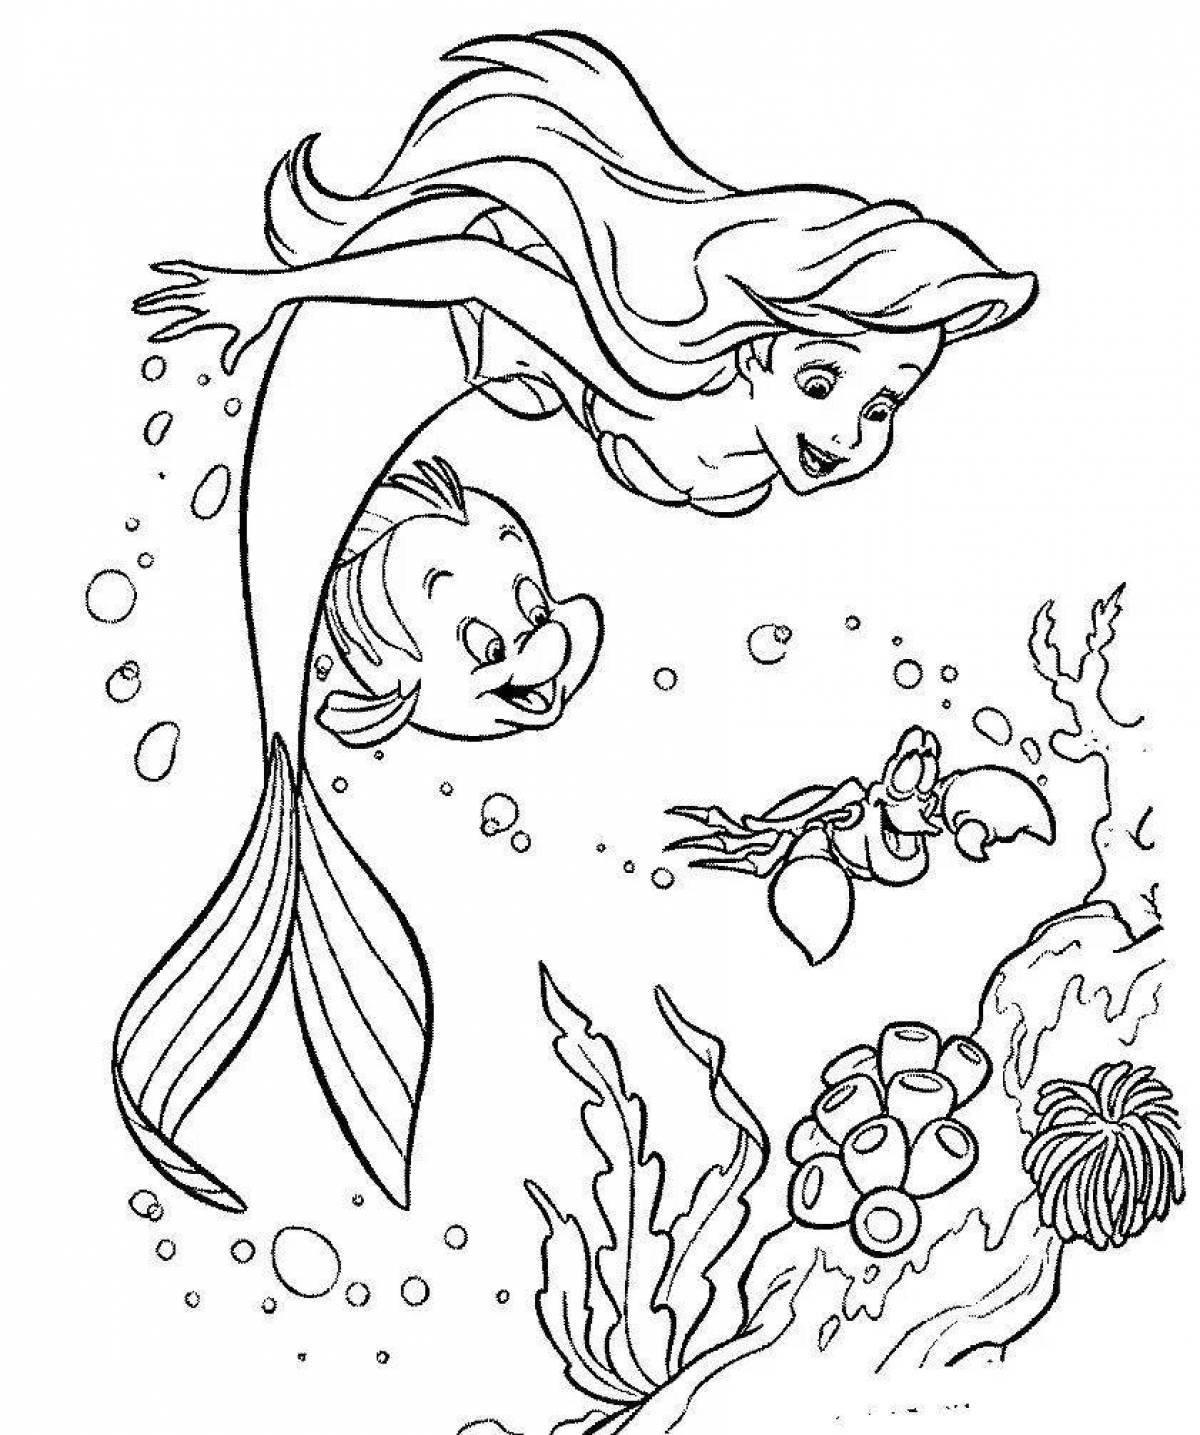 Fantastic coloring mermaid drawing